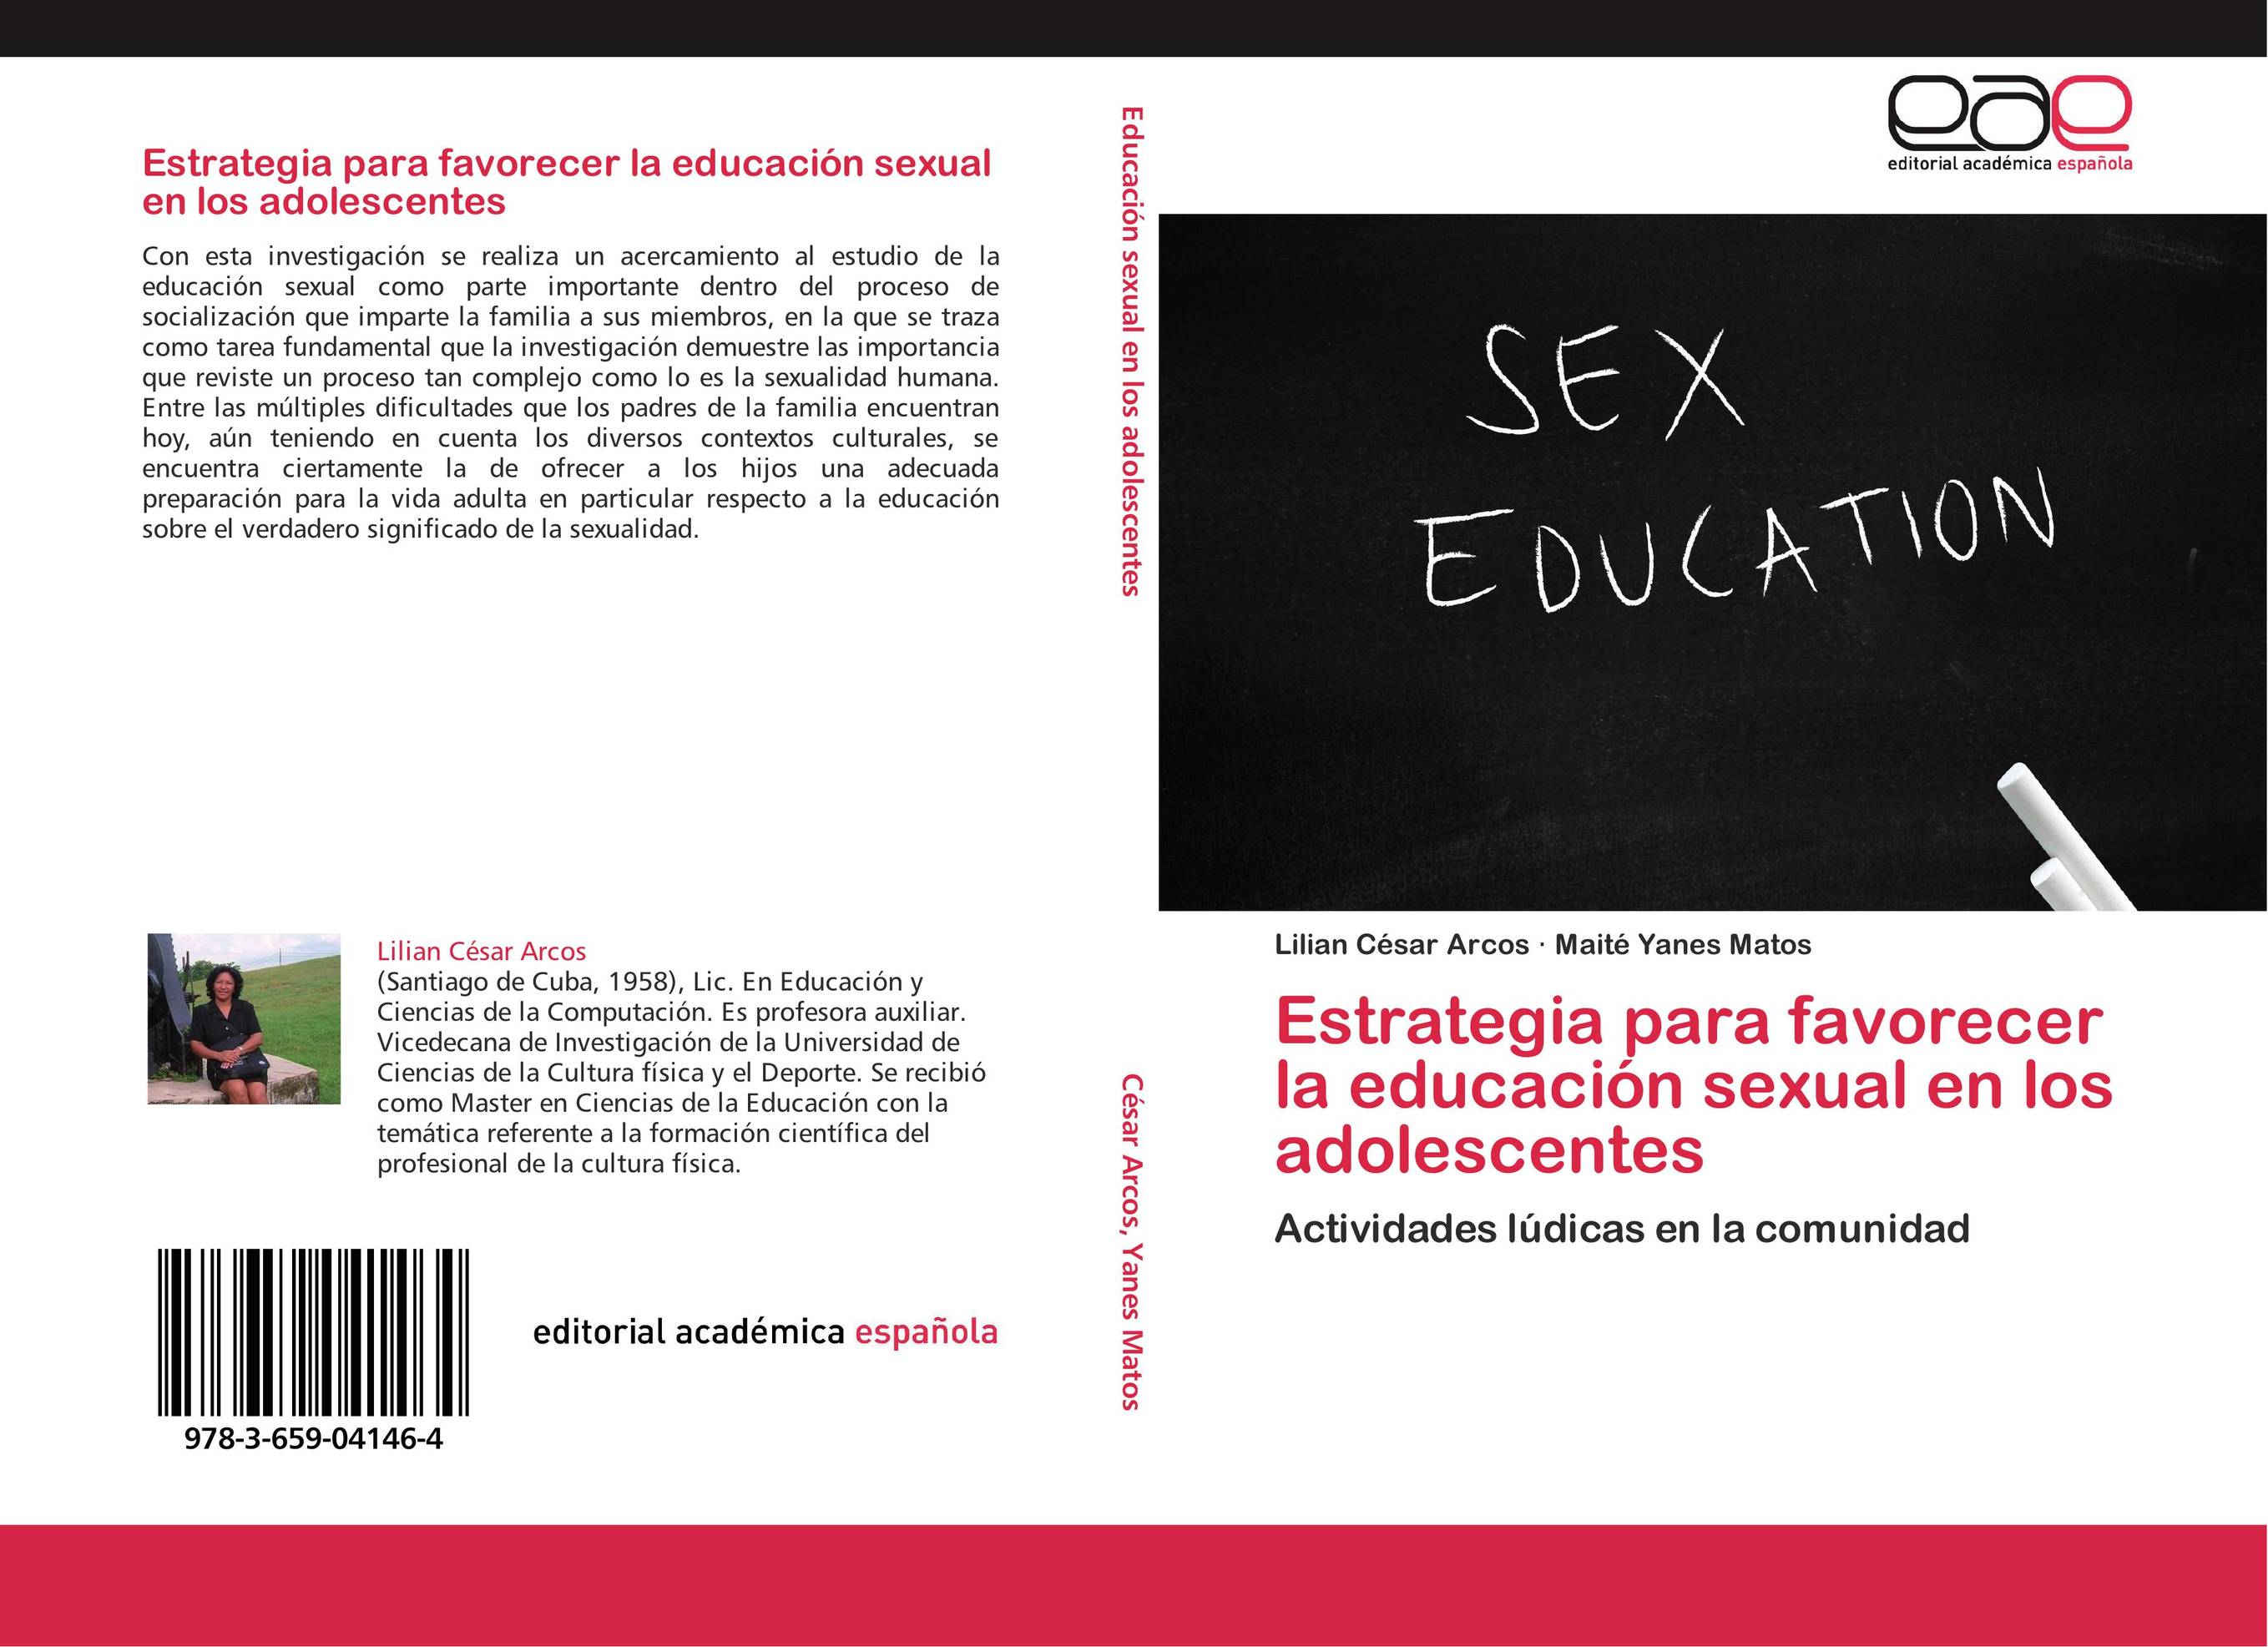 Estrategia para favorecer la educación sexual en los adolescentes